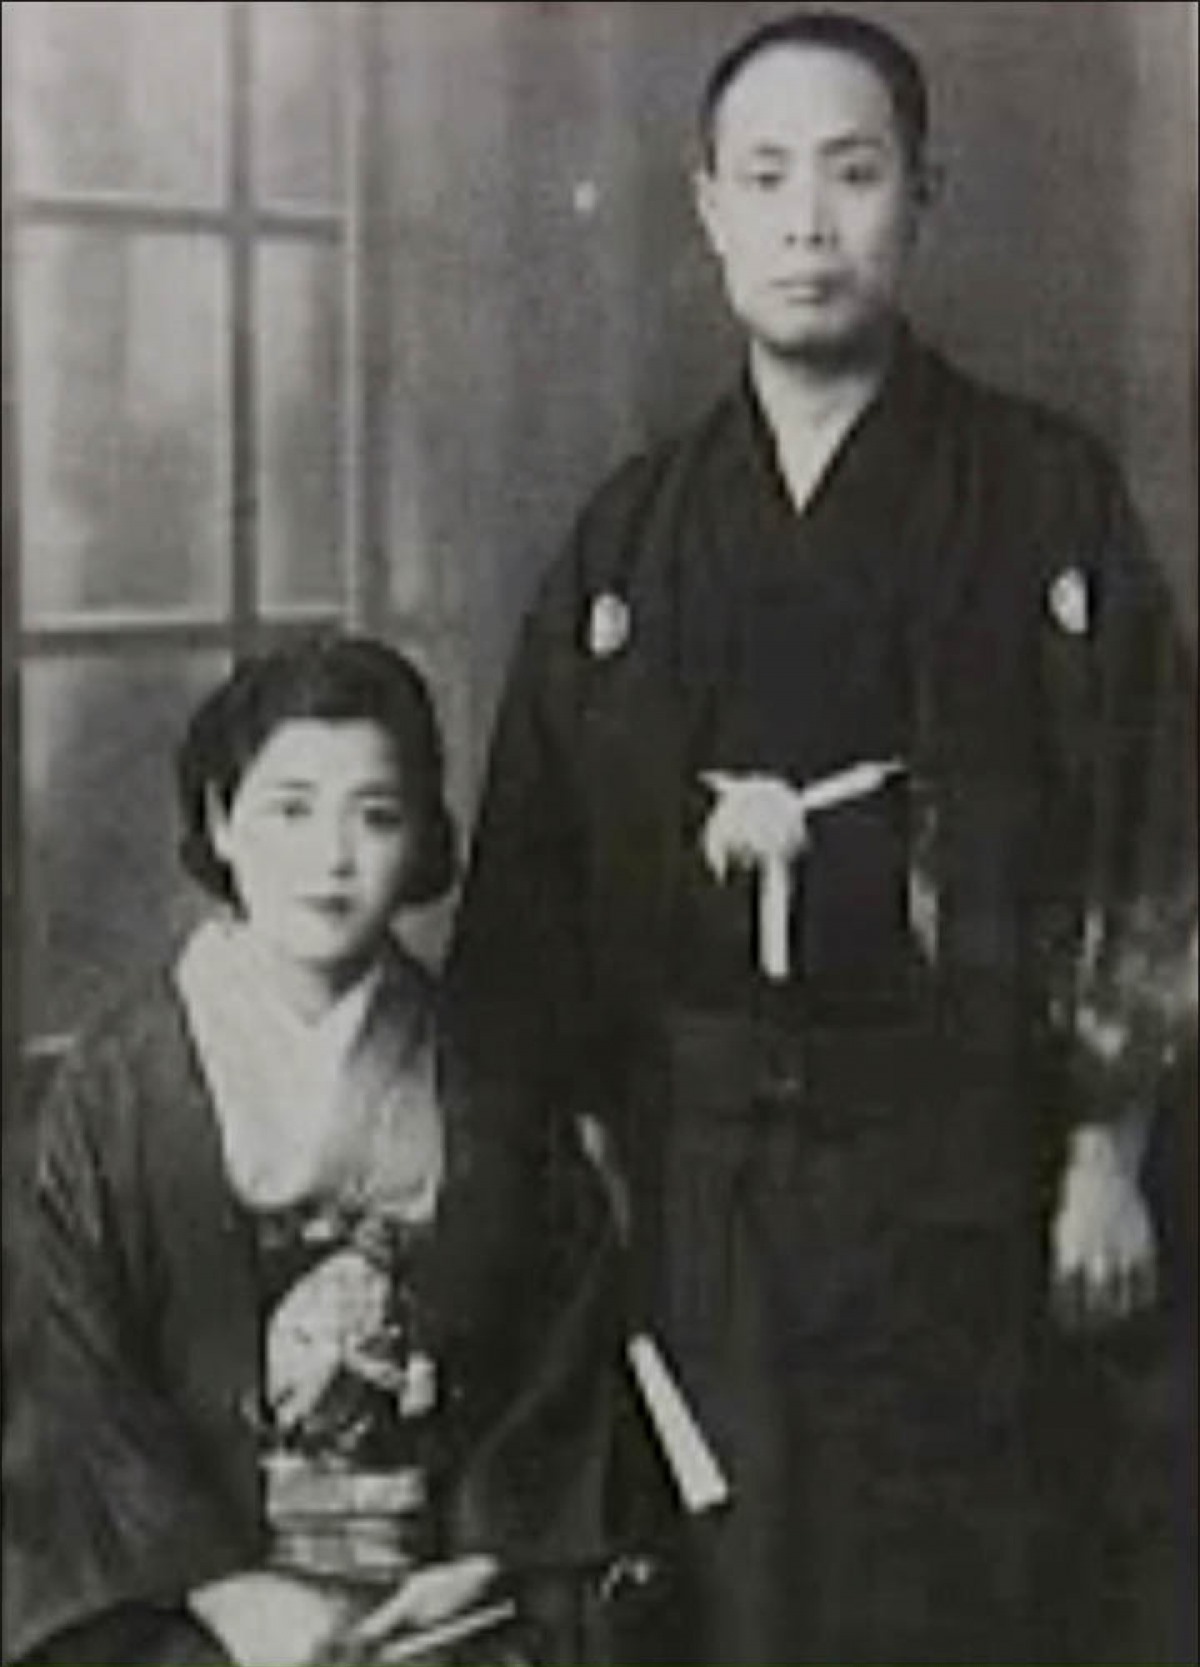 Ông Yasaburo và người vợ ở Nhật Bản, bà Hisako. Ảnh: RT en español